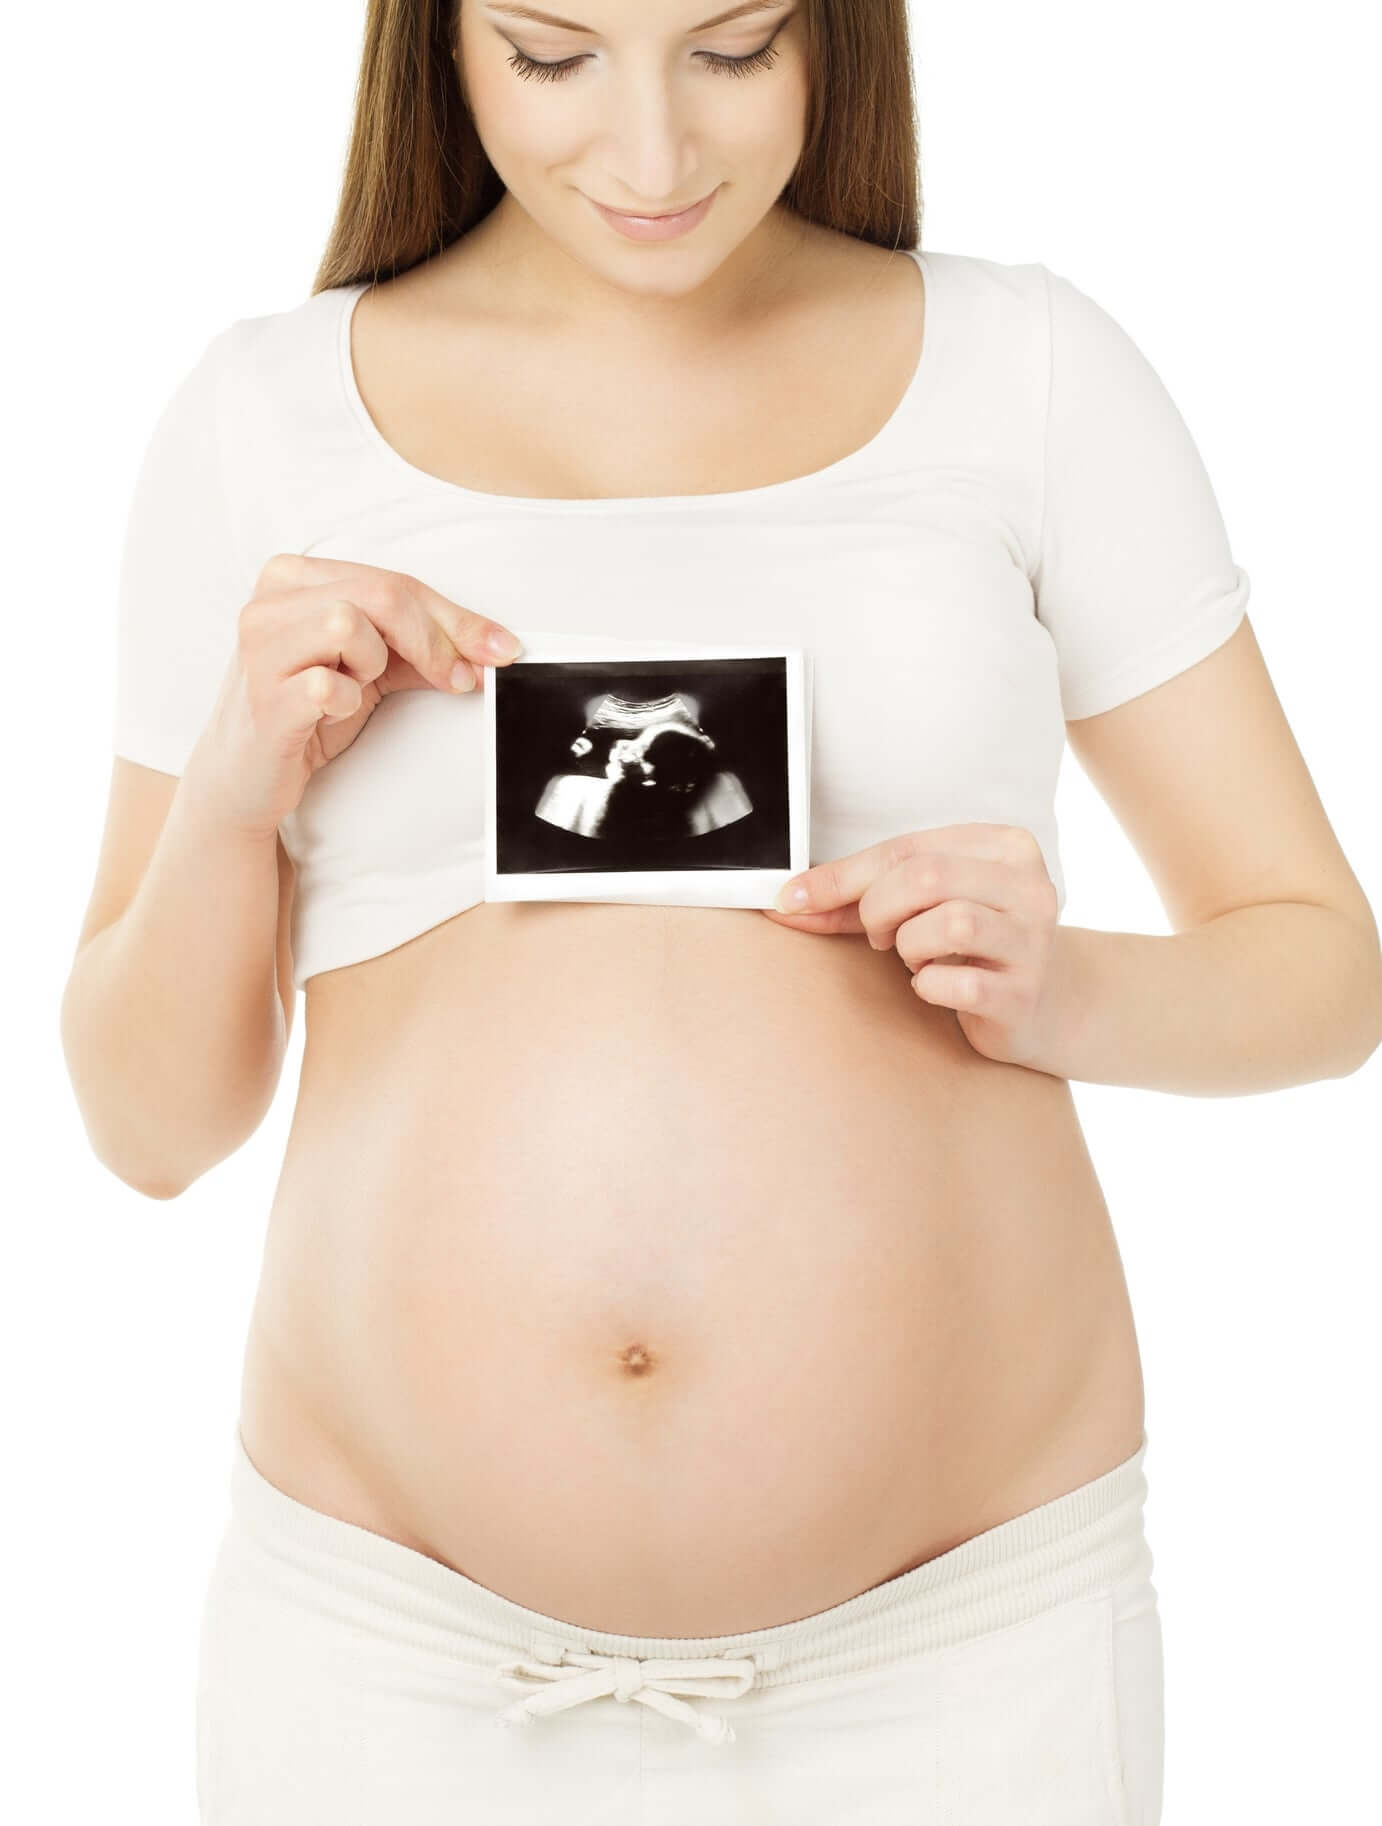 УЗИ при беременности по доступной цене